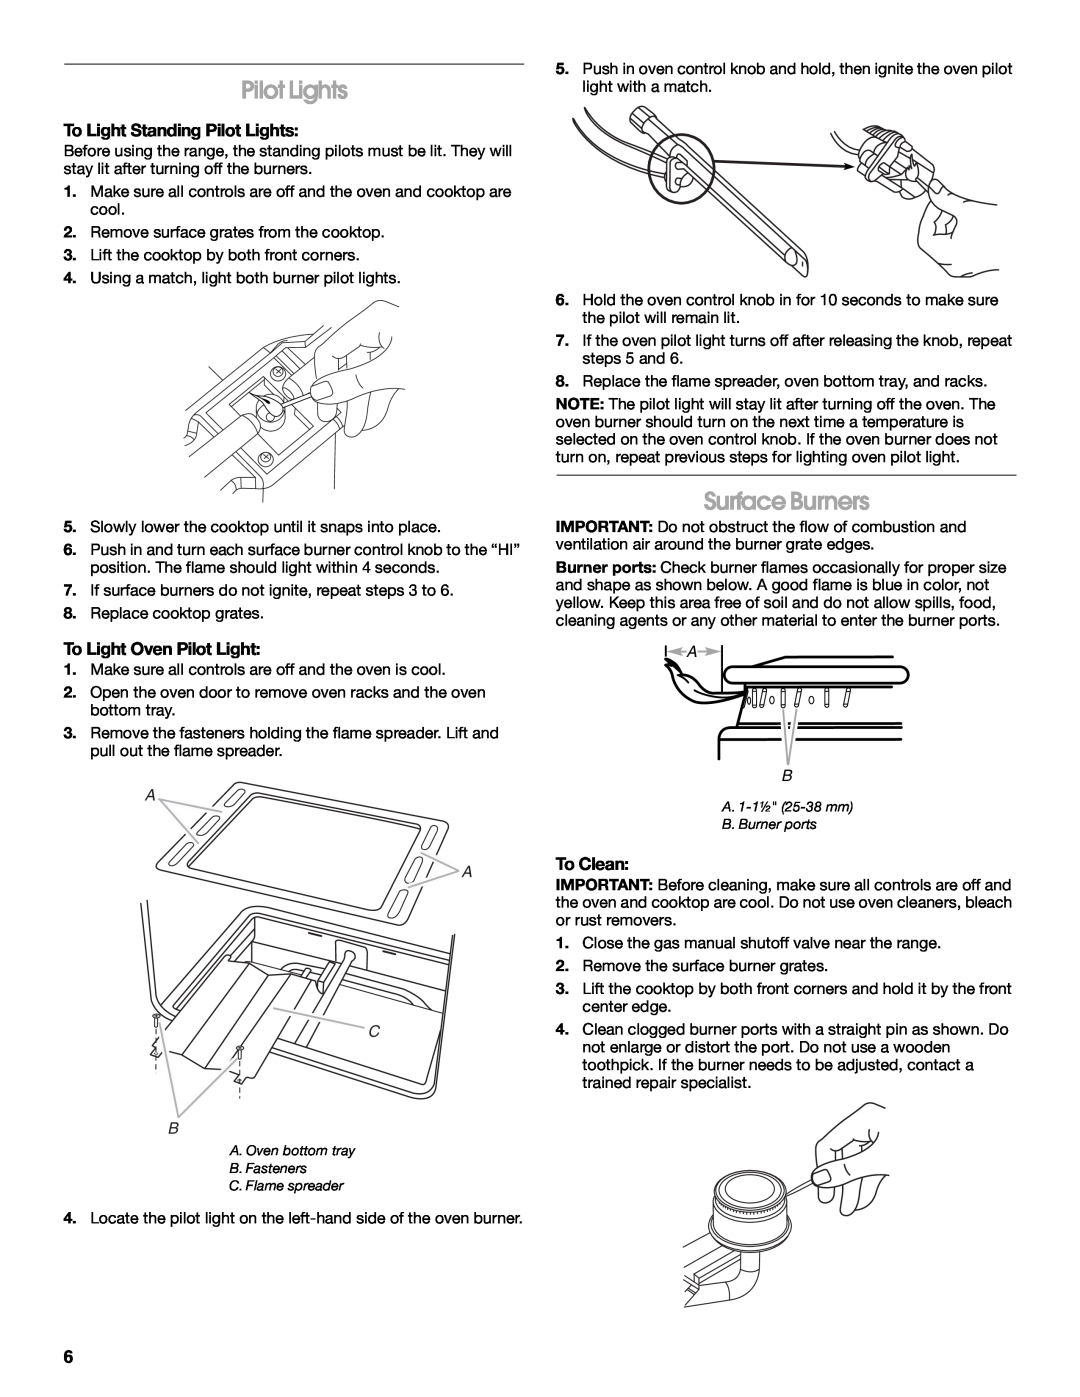 Amana W10320693A manual Surface Burners, To Light Standing Pilot Lights, To Light Oven Pilot Light, To Clean, A A C B 